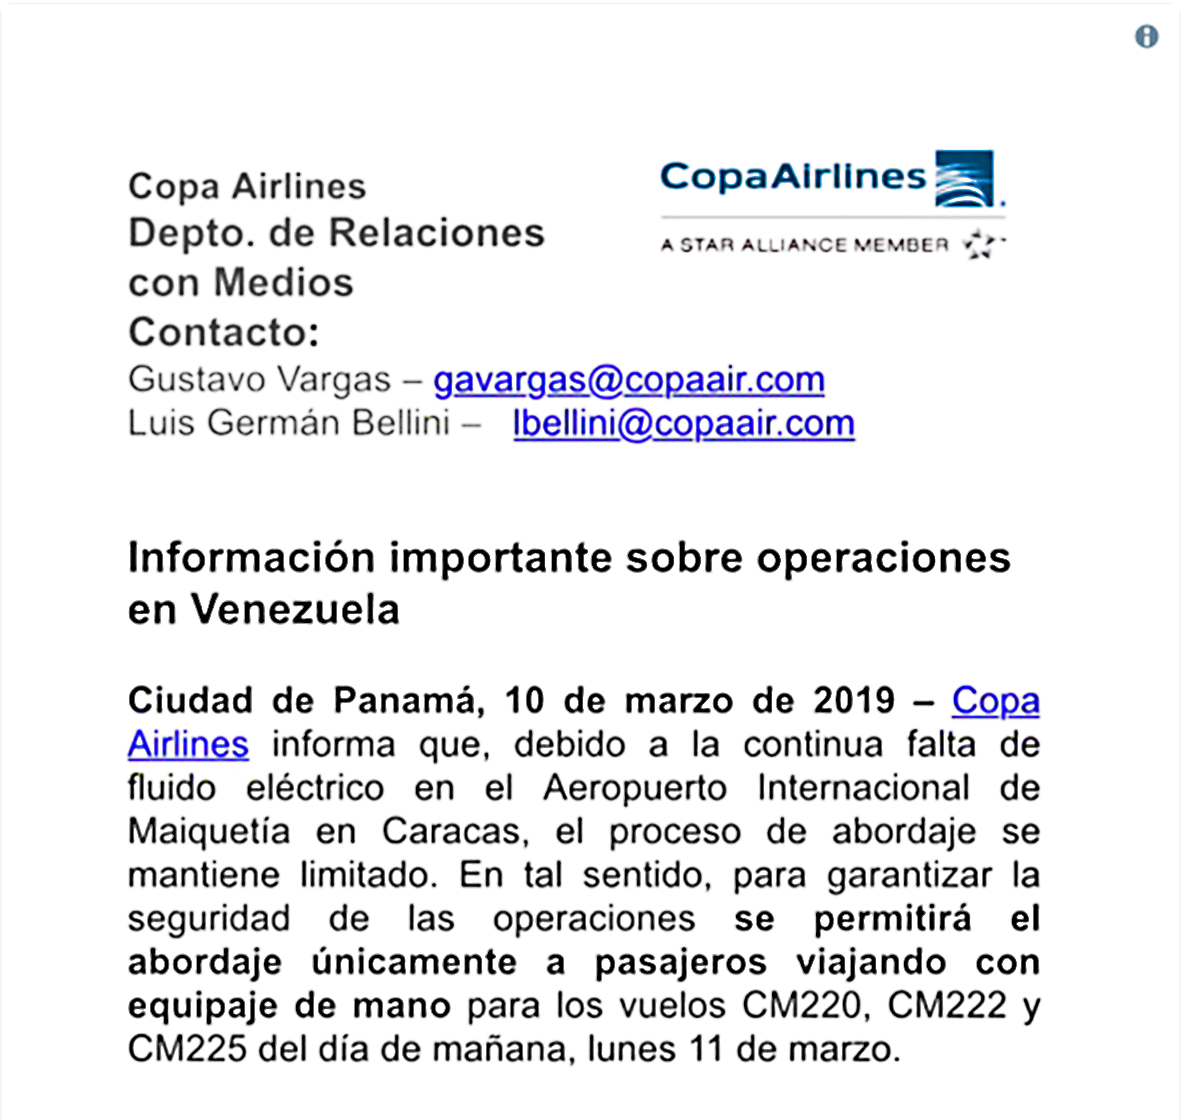 Copa Airlines solamente abordaje con equipaje de mano - Diario Avance